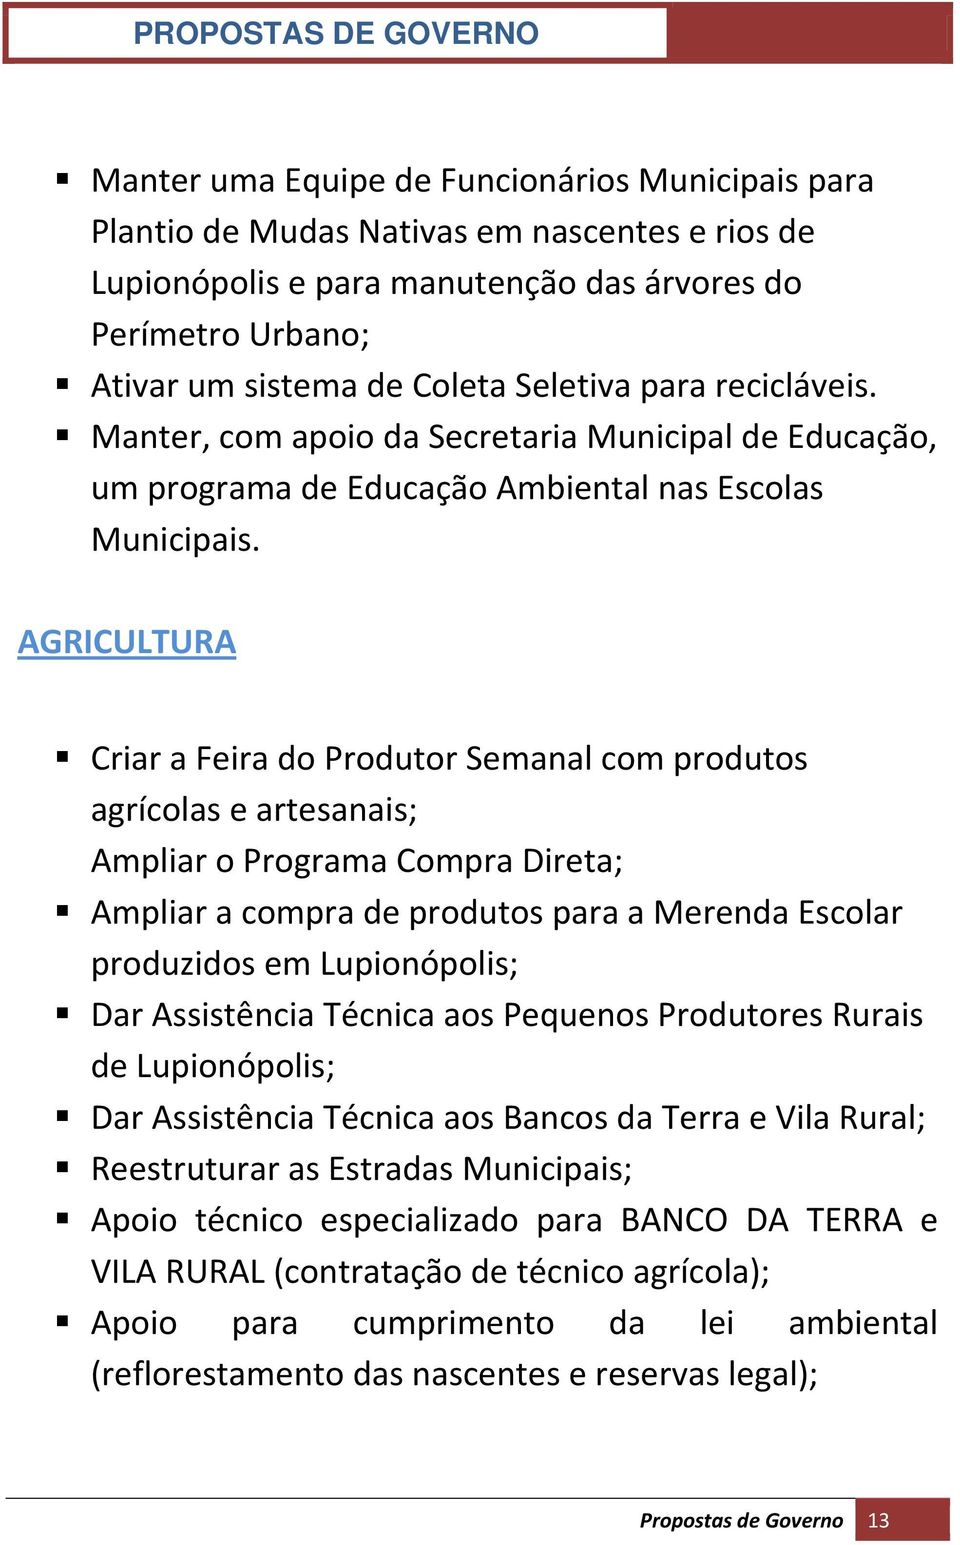 AGRICULTURA Criar a Feira do Produtor Semanal com produtos agrícolas e artesanais; Ampliar o Programa Compra Direta; Ampliar a compra de produtos para a Merenda Escolar produzidos em Lupionópolis;